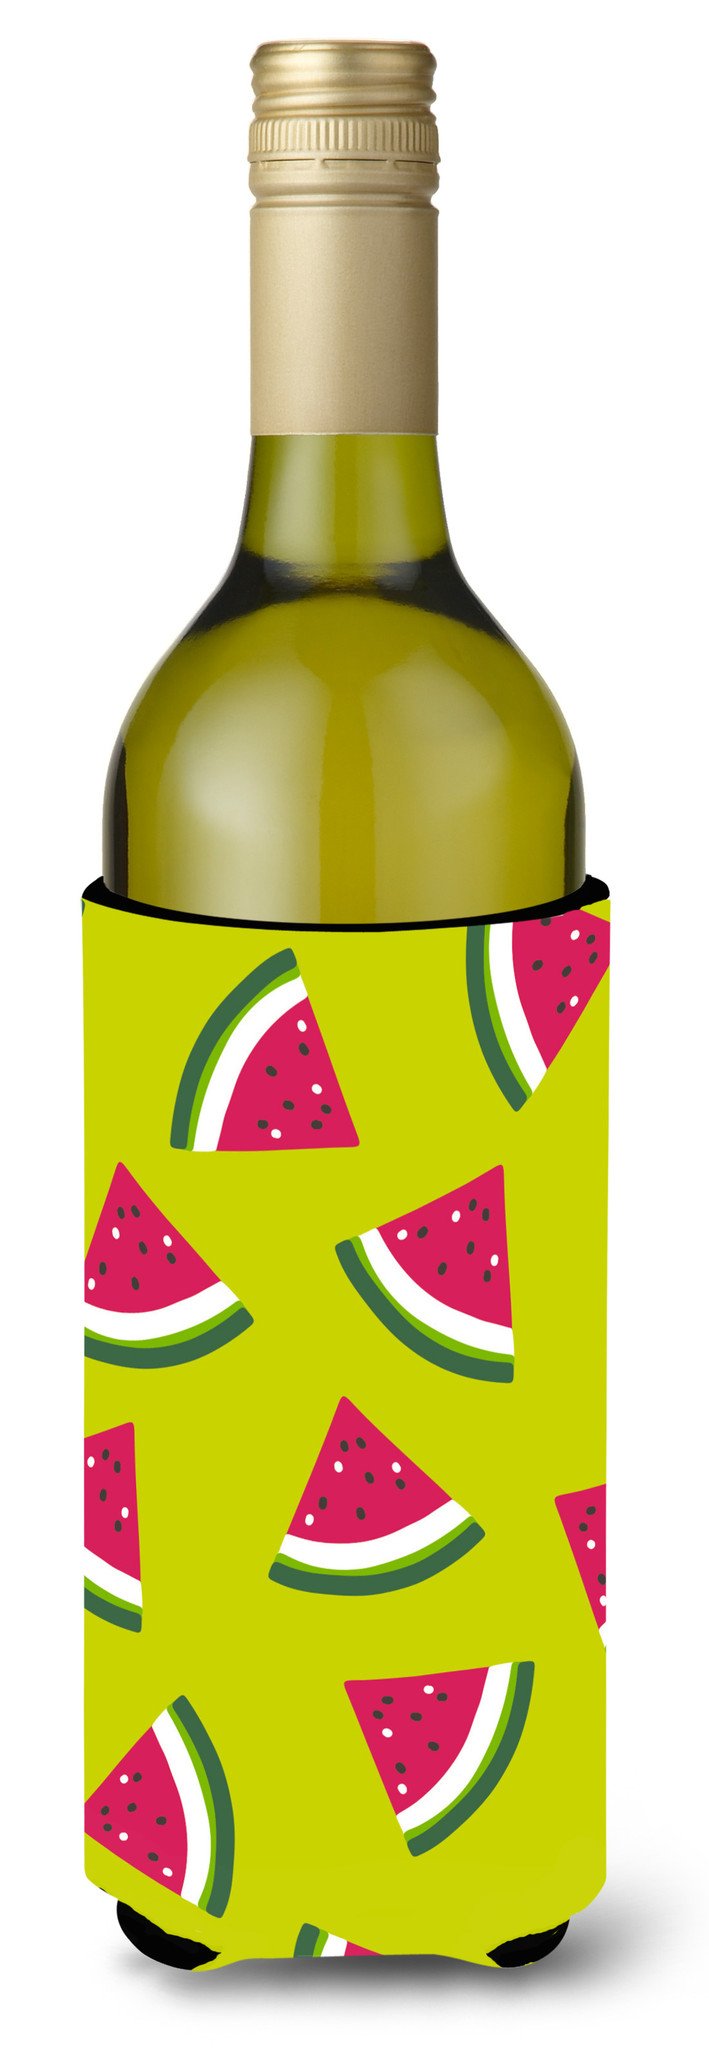 Watermelon on Lime Green Wine Bottle Beverge Insulator Hugger BB5151LITERK by Caroline's Treasures